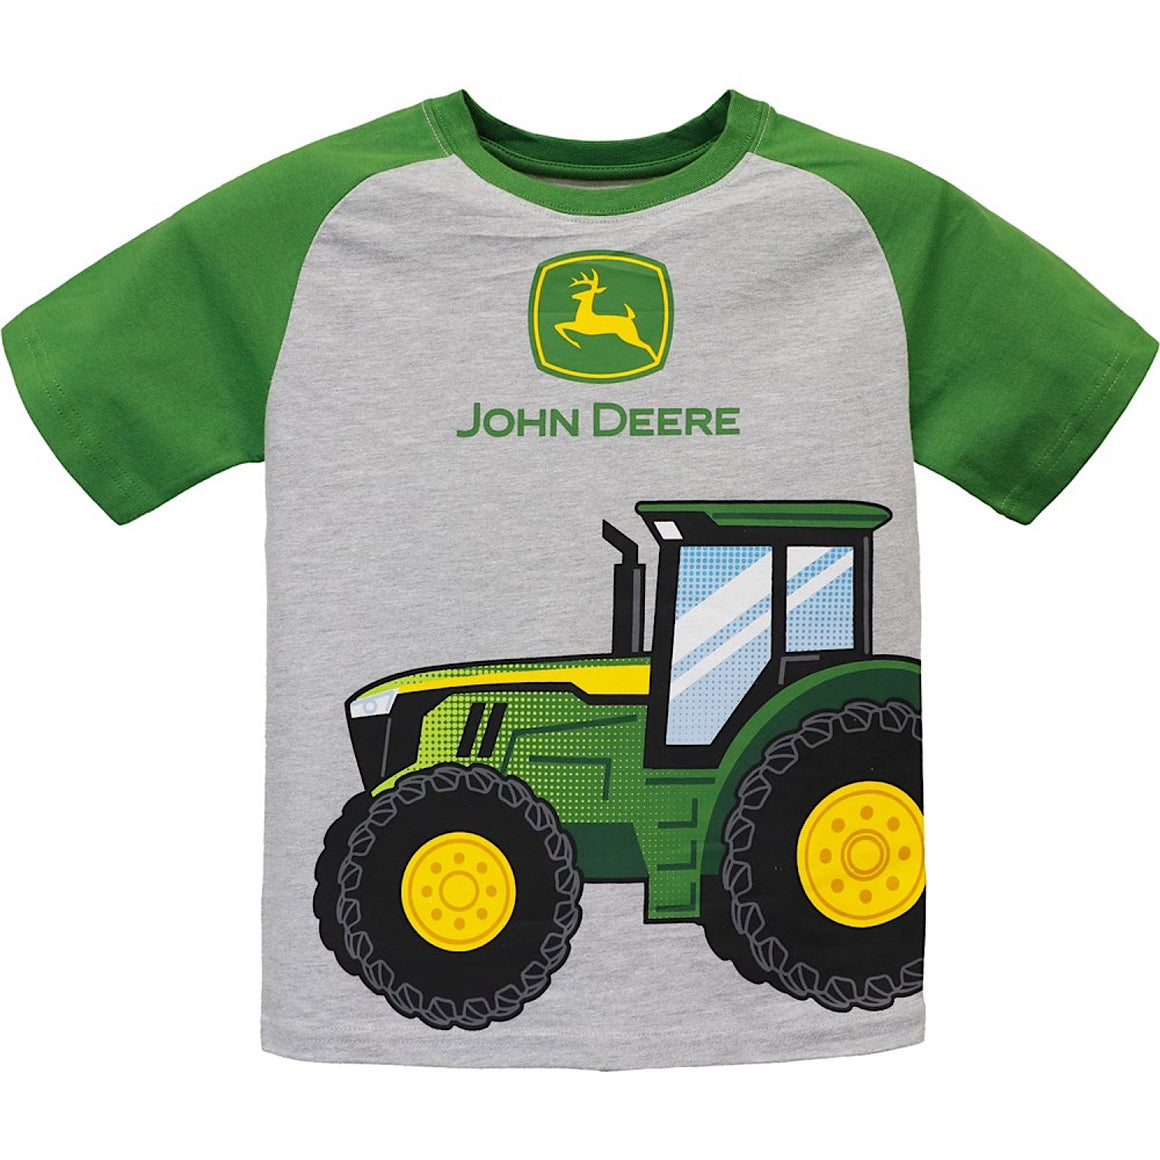 John Deere Kids Tractor T-Shirt - Light Grey/Green